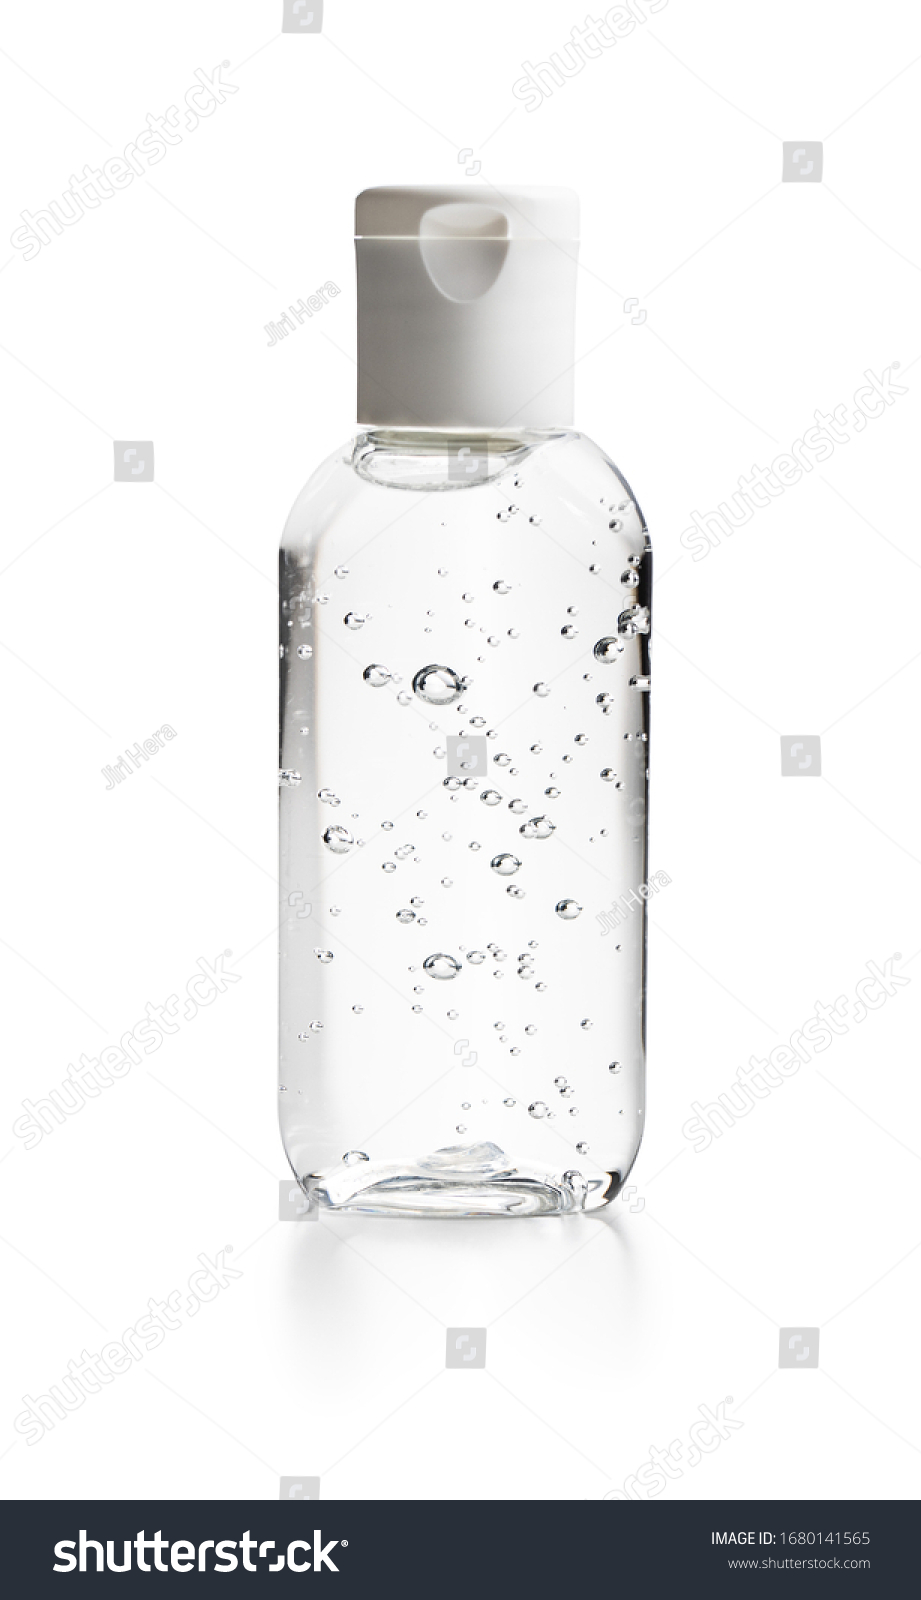 Coronavirus prevention hand sanitizer gel in bottle. Hand disinfectant gel isolated on white background.